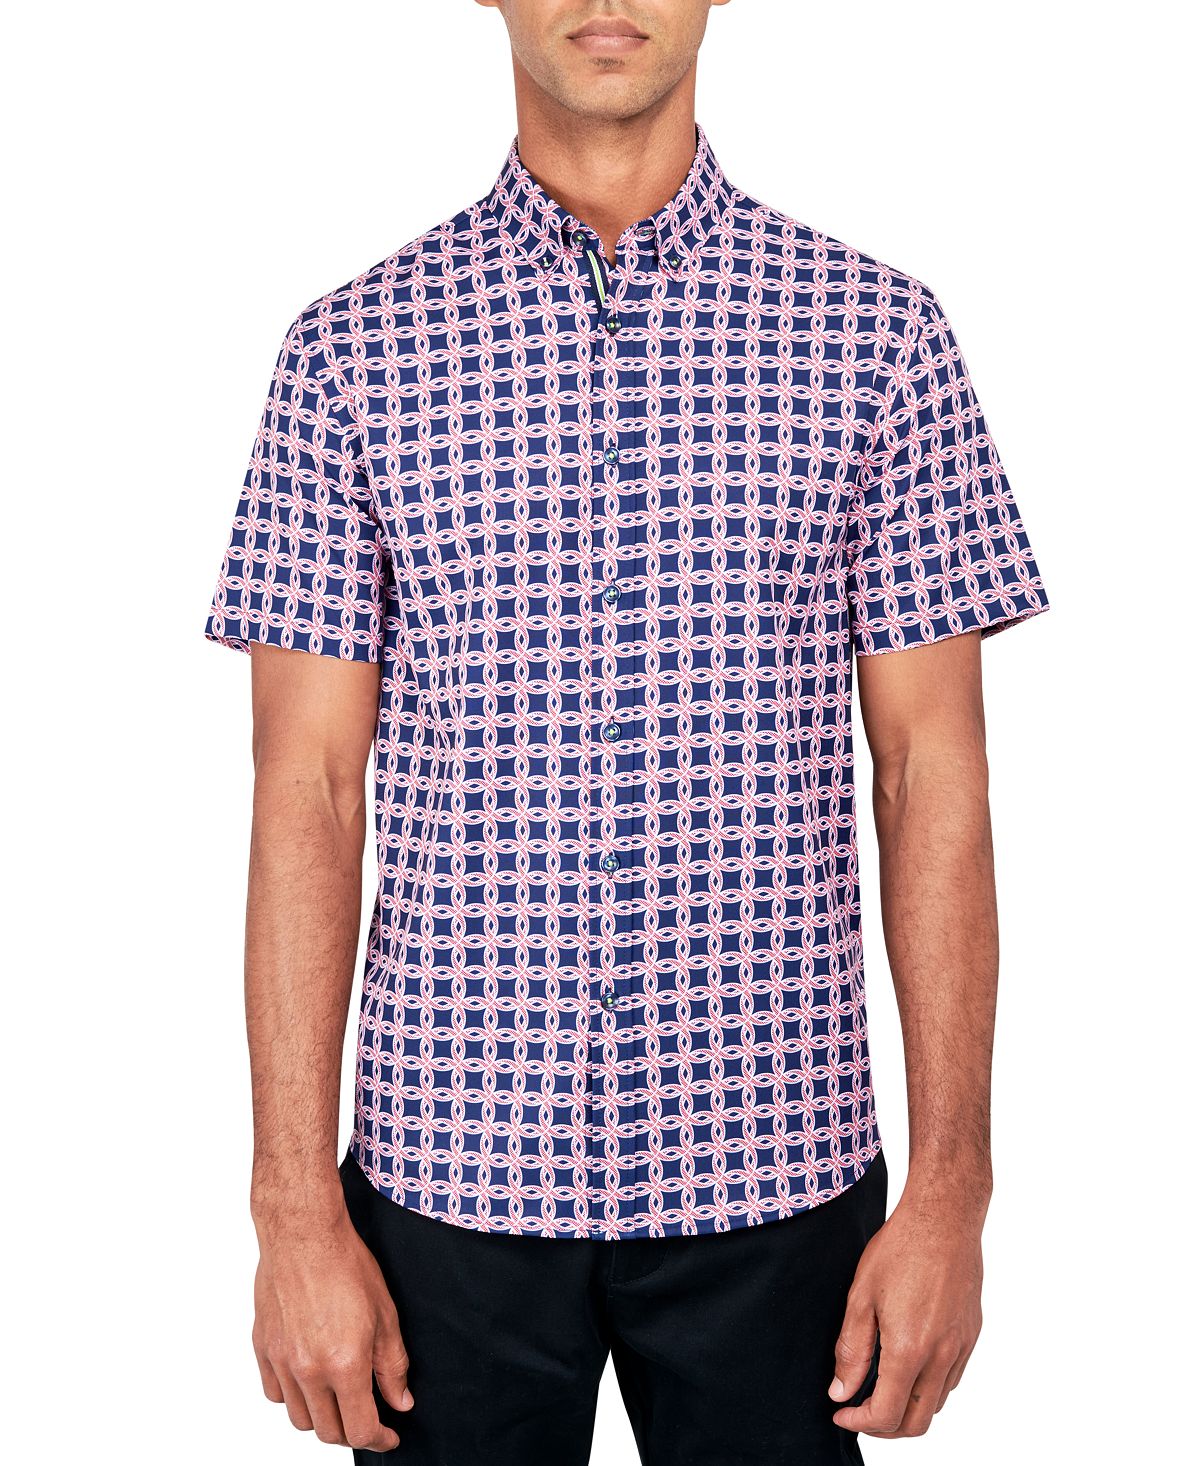 цена Мужская рубашка на пуговицах с круглым принтом и эластичным принтом обычного кроя без утюга Society of Threads